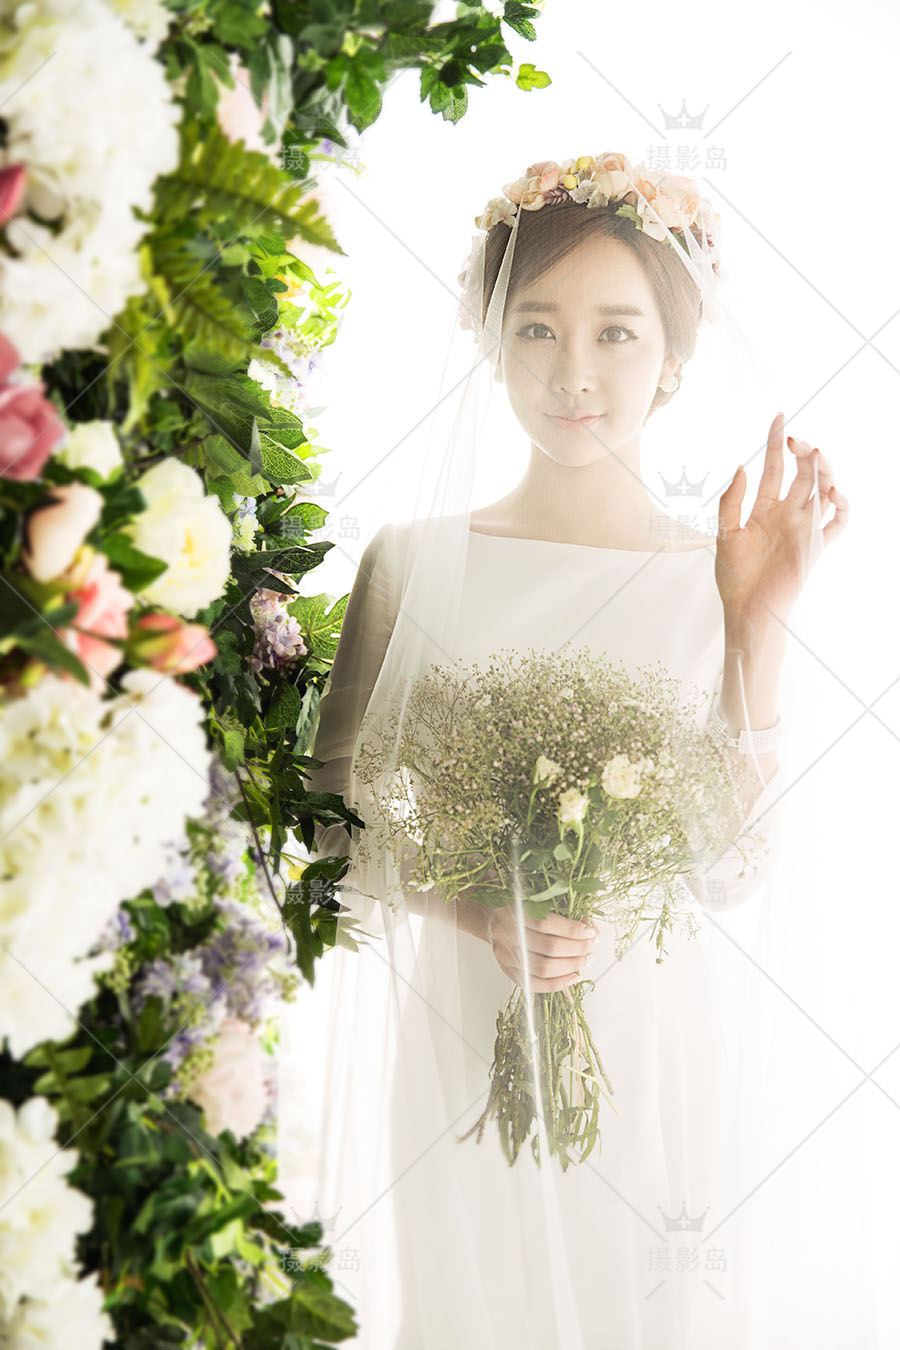 婚纱摄影展会放大样片，韩式唯美花海情侣写真照片样册